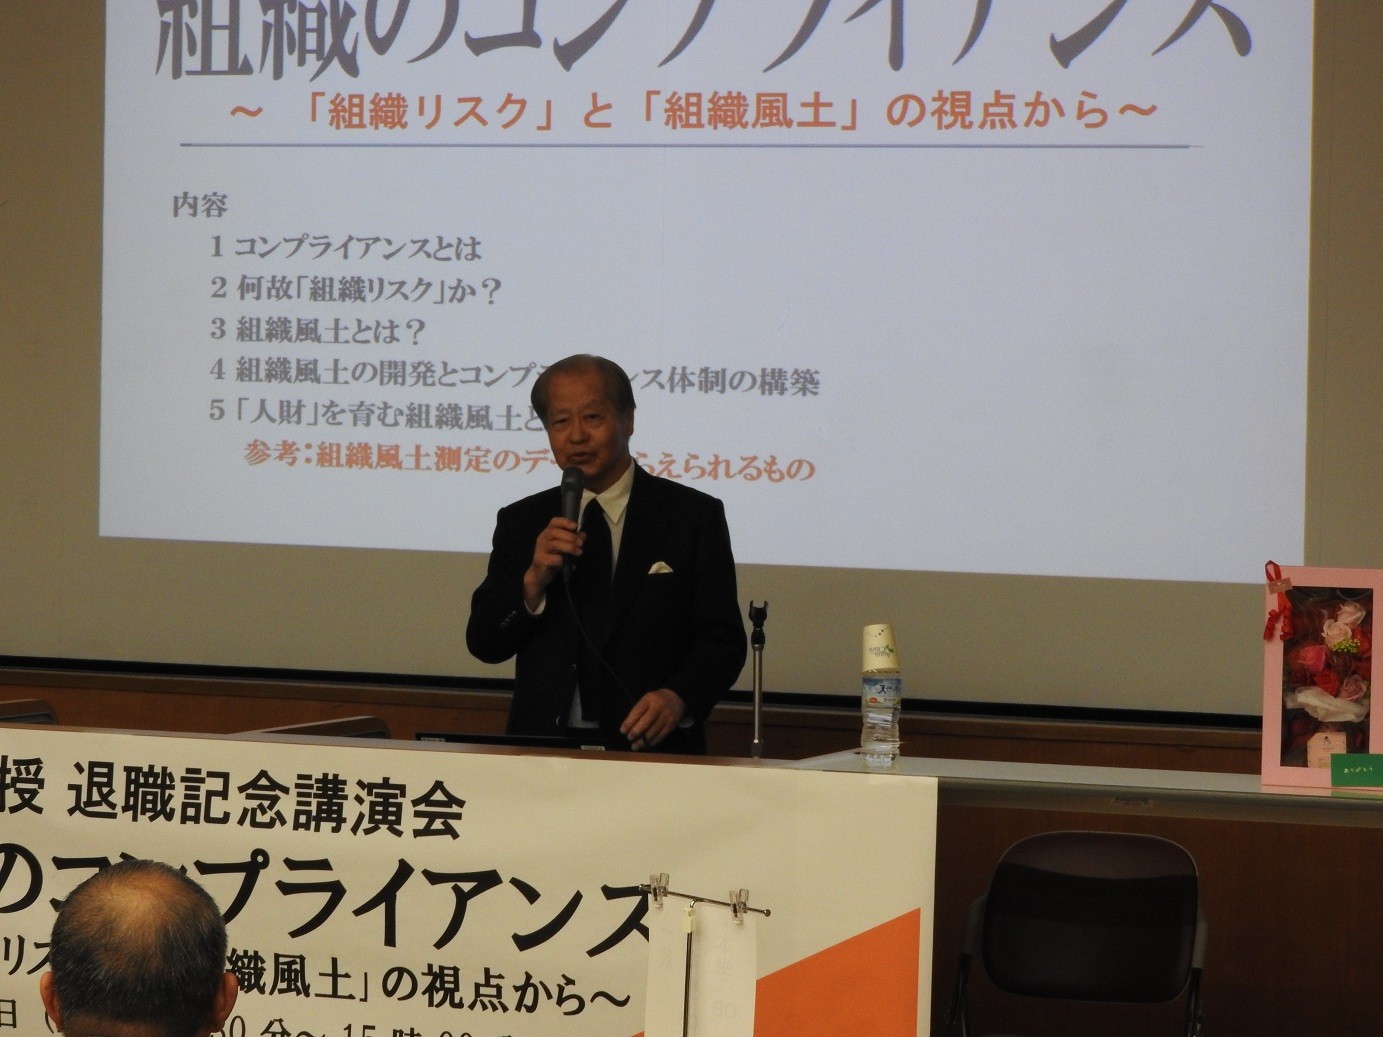 経営学部長の佐藤勝尚教授の退職記念講演会を開催しました。